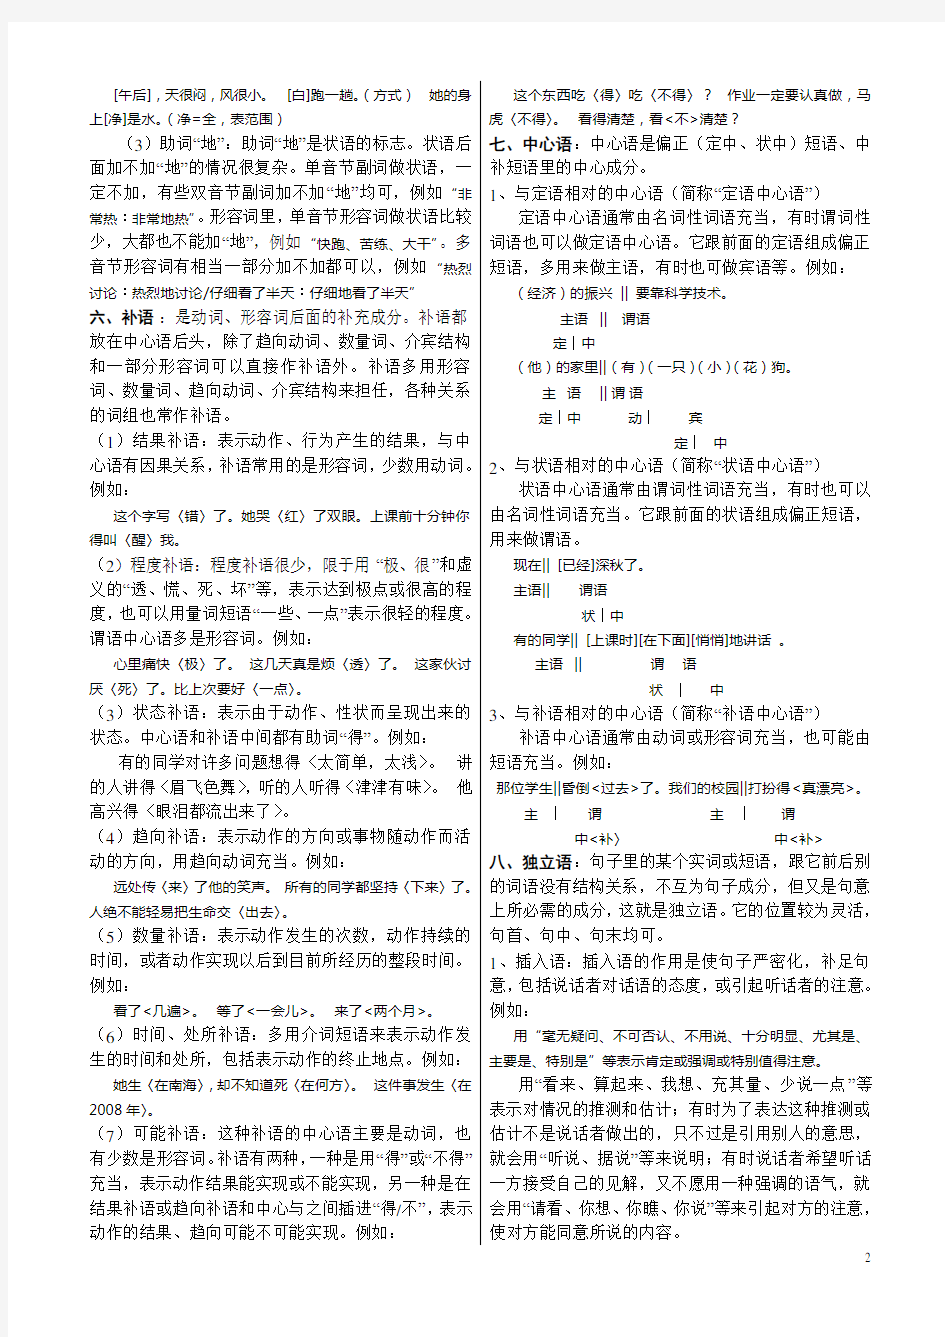 现代汉语句子成分分析